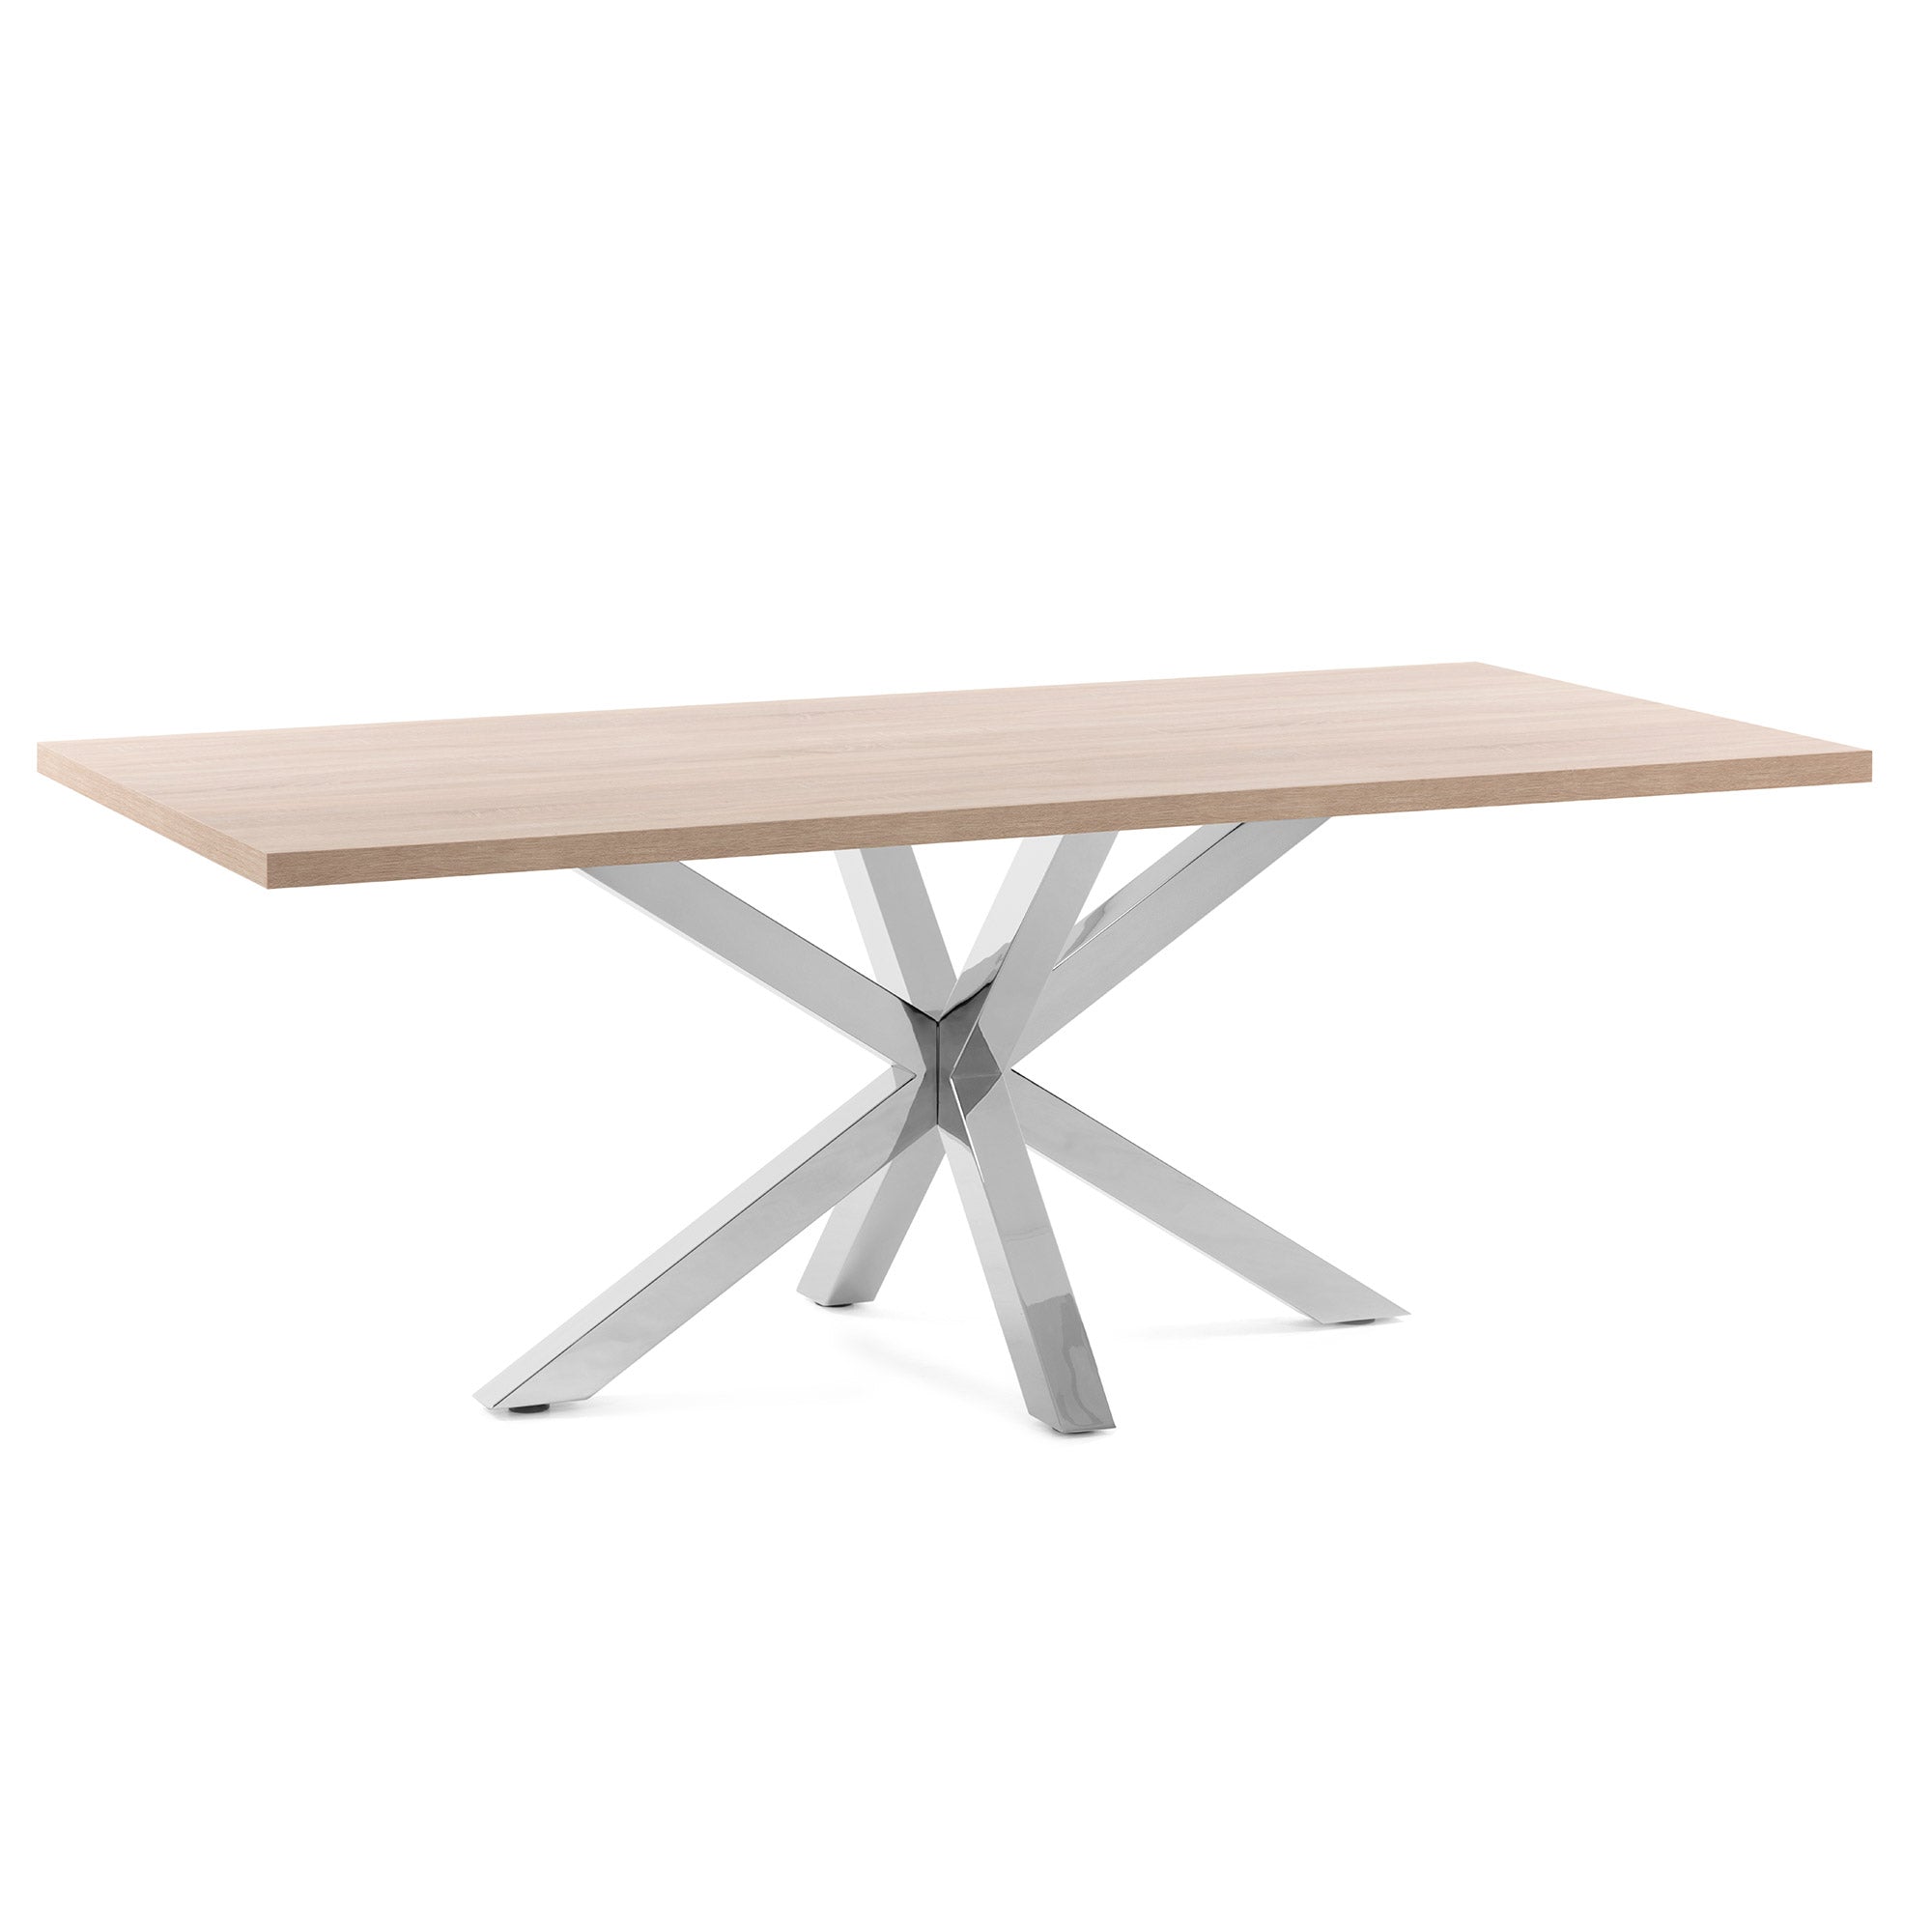 Argo table 160 cm natural melamine stainless steel legs